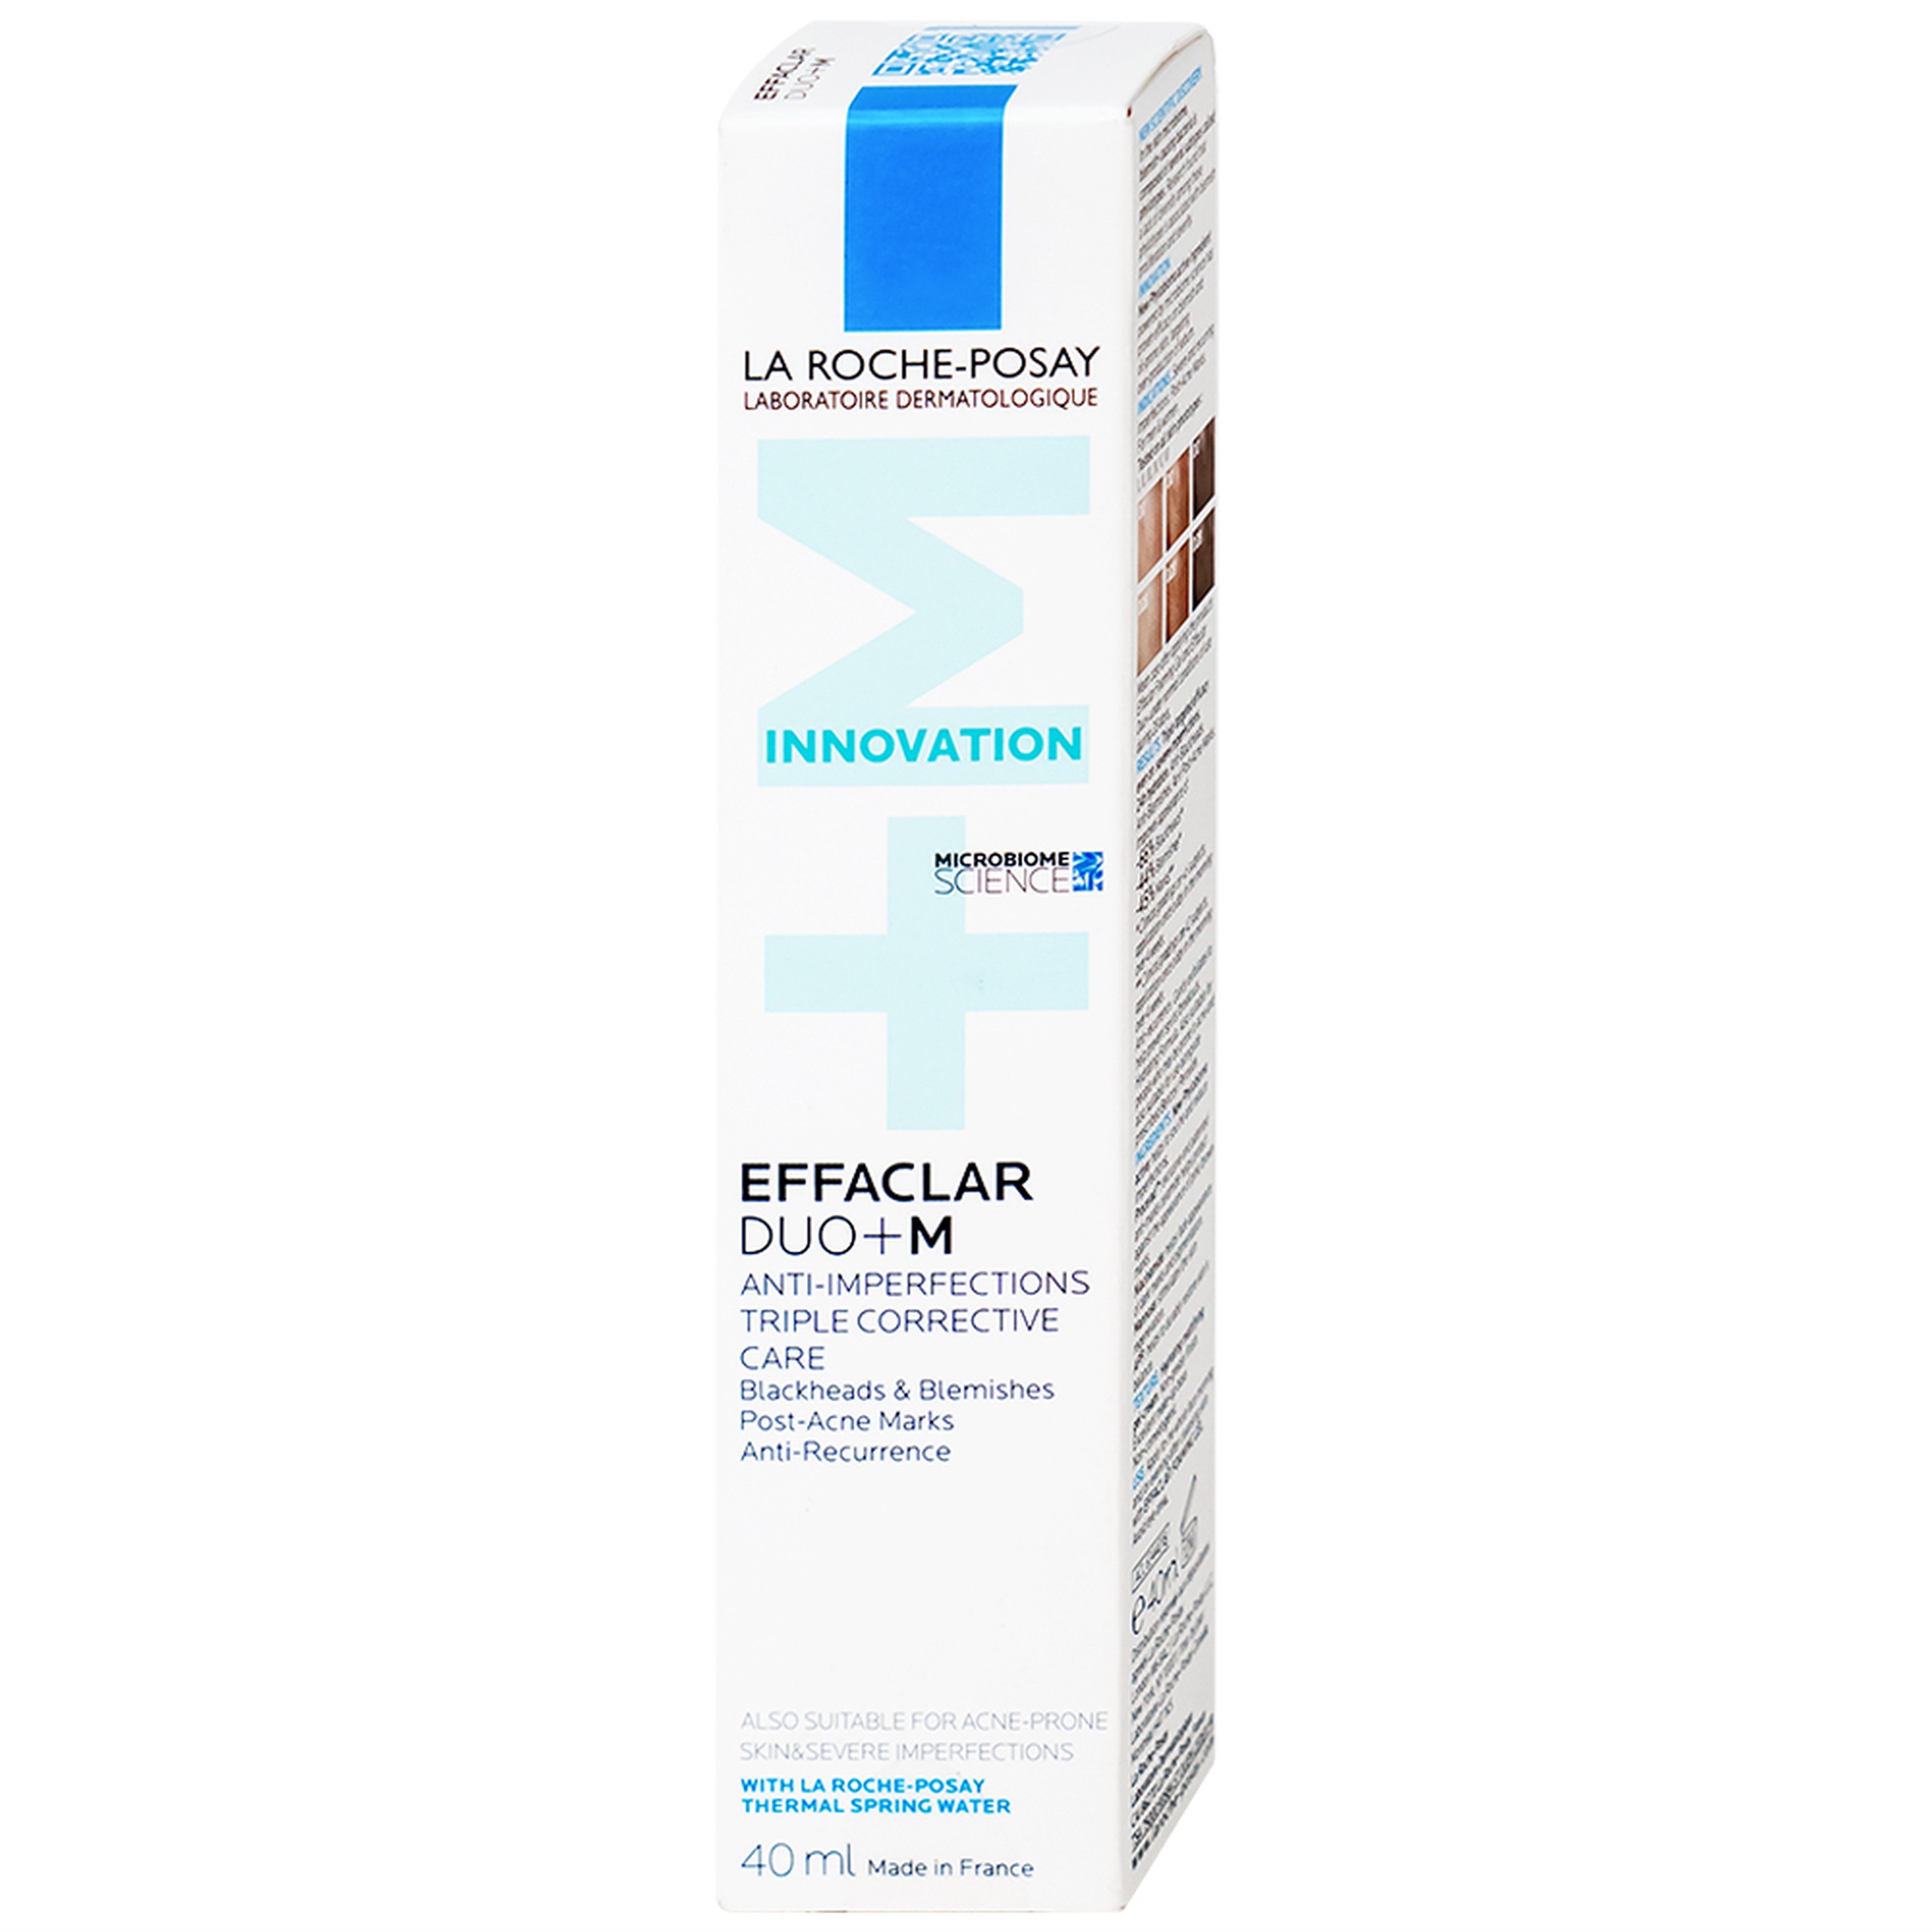 Kem dưỡng da La Roche-Posay Effaclar Duo (+) hỗ trợ giảm viêm và giảm mụn đỏ tấy trong vòng 12 giờ (40ml)